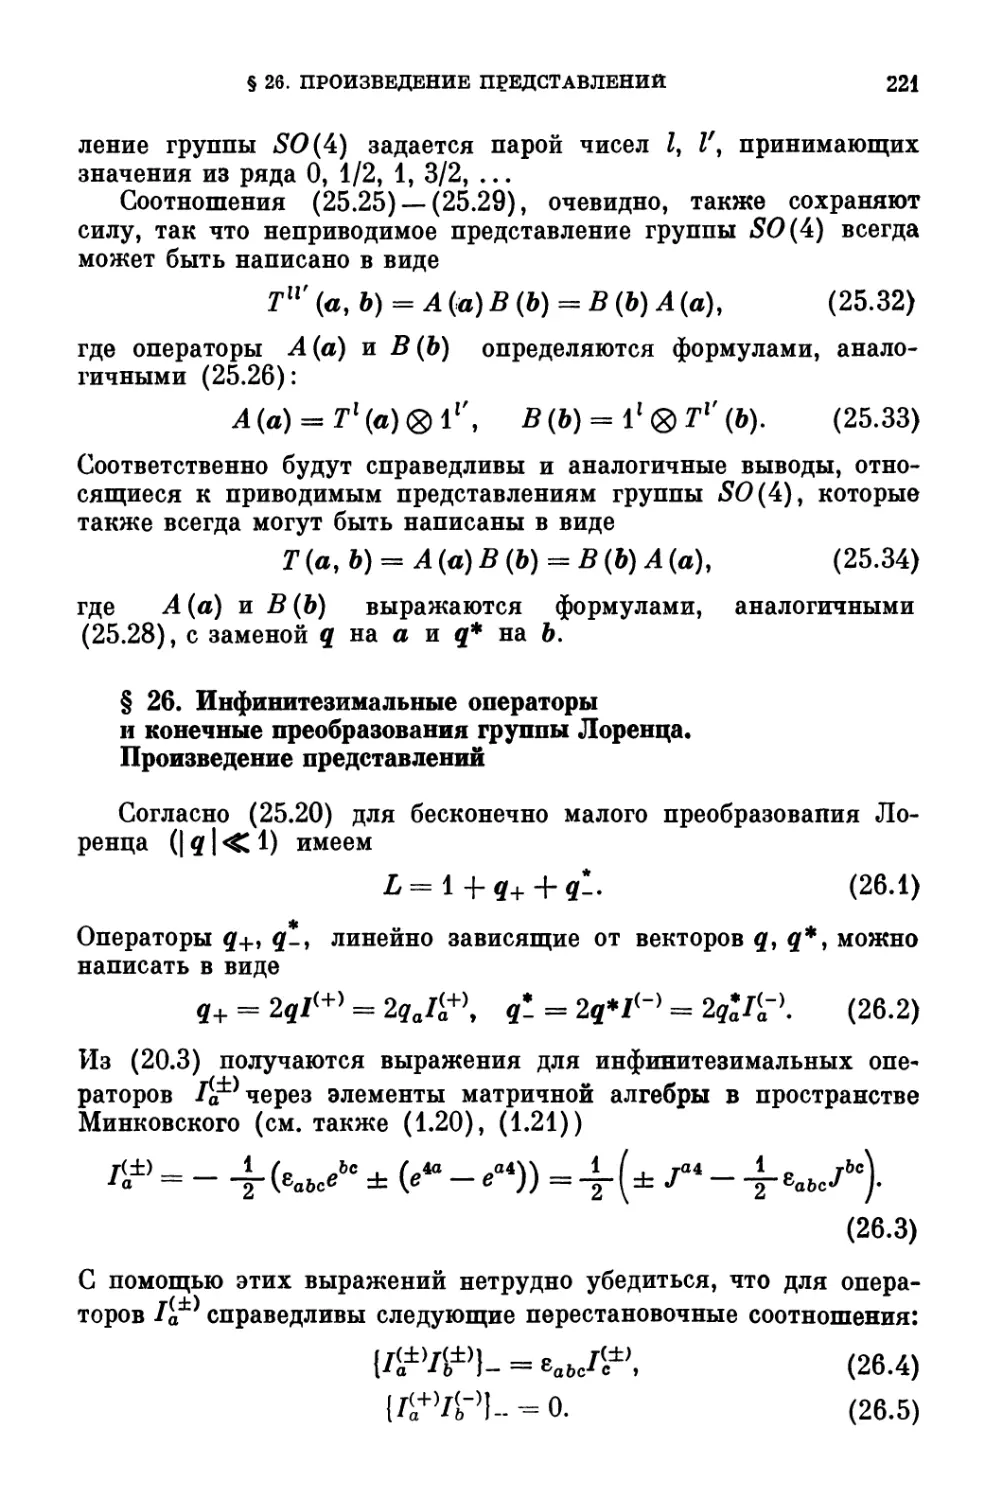 § 26. Инфинитезимальные операторы и конечные преобразования группы Лоренца. Произведение представлений